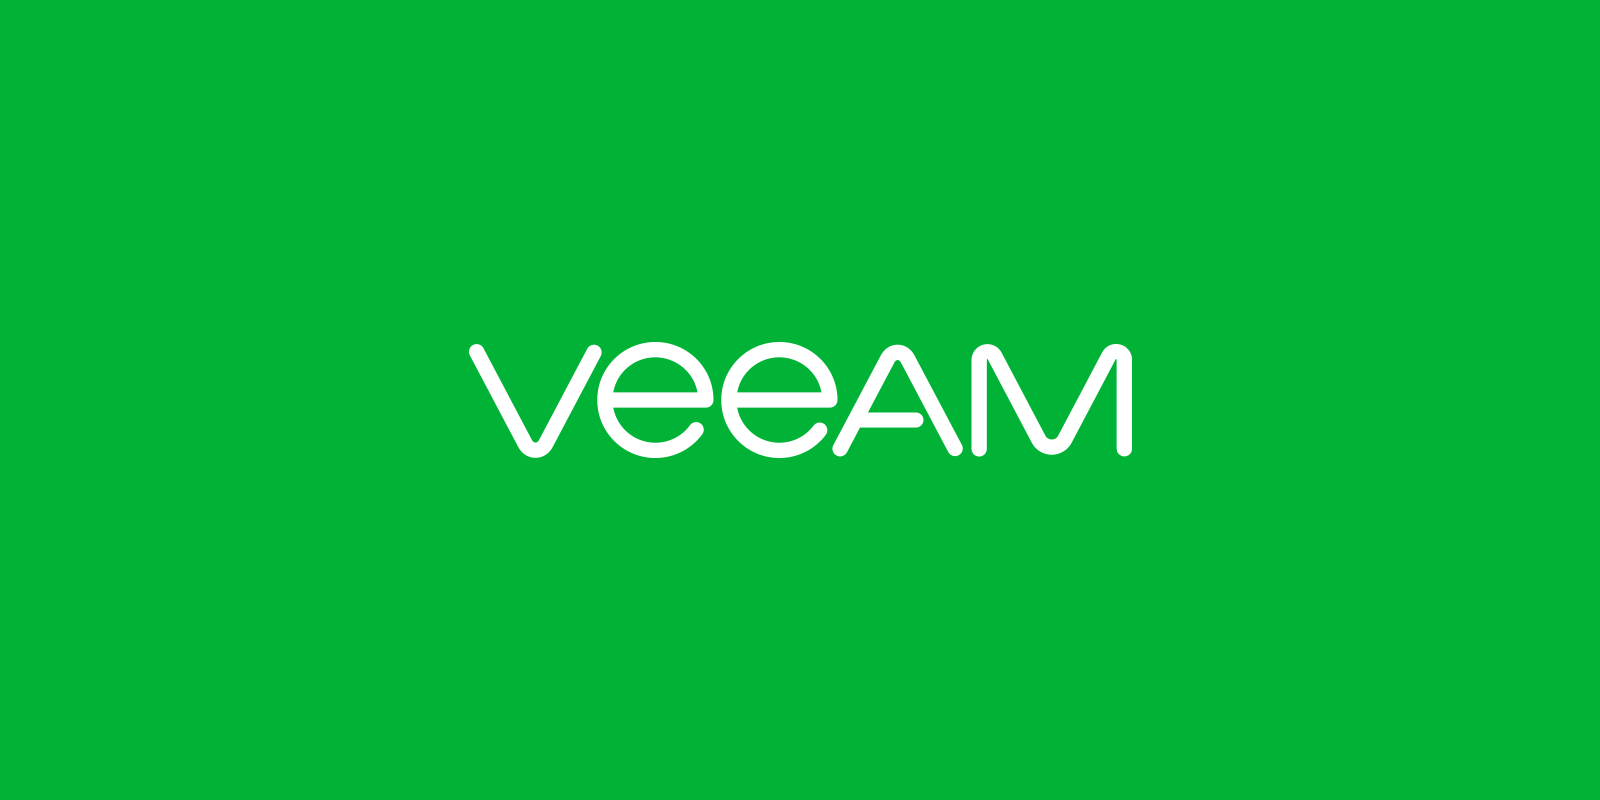 Veeam Backup & Replication คือ แอปพลิเคชั่นสำรองข้อมูล เป็นกรรมสิทธิ์ที่พัฒนาโดย Veeam สำหรับสภาพแวดล้อมเสมือนจริงที่สร้างขึ้นบน VMware vSphereและMicrosoft Hyper-V hypervisors ซอฟต์แวร์ให้สำรองข้อมูลเรียกคืนและการทำงานสำหรับการจำลองแบบเสมือนเครื่องเซิร์ฟเวอร์ ทางกายภาพและเวิร์กสเตชัน 
การสำรองข้อมูลและการจำลองแบบ Veeam ทำงานทั้งสองชั้น เสมือนและจัดการการสำรองข้อมูลเครื่องทางกายภาพ สนับสนุน VMs โดยใช้ภาพรวมของ hypervisor เพื่อดึงข้อมูล VM